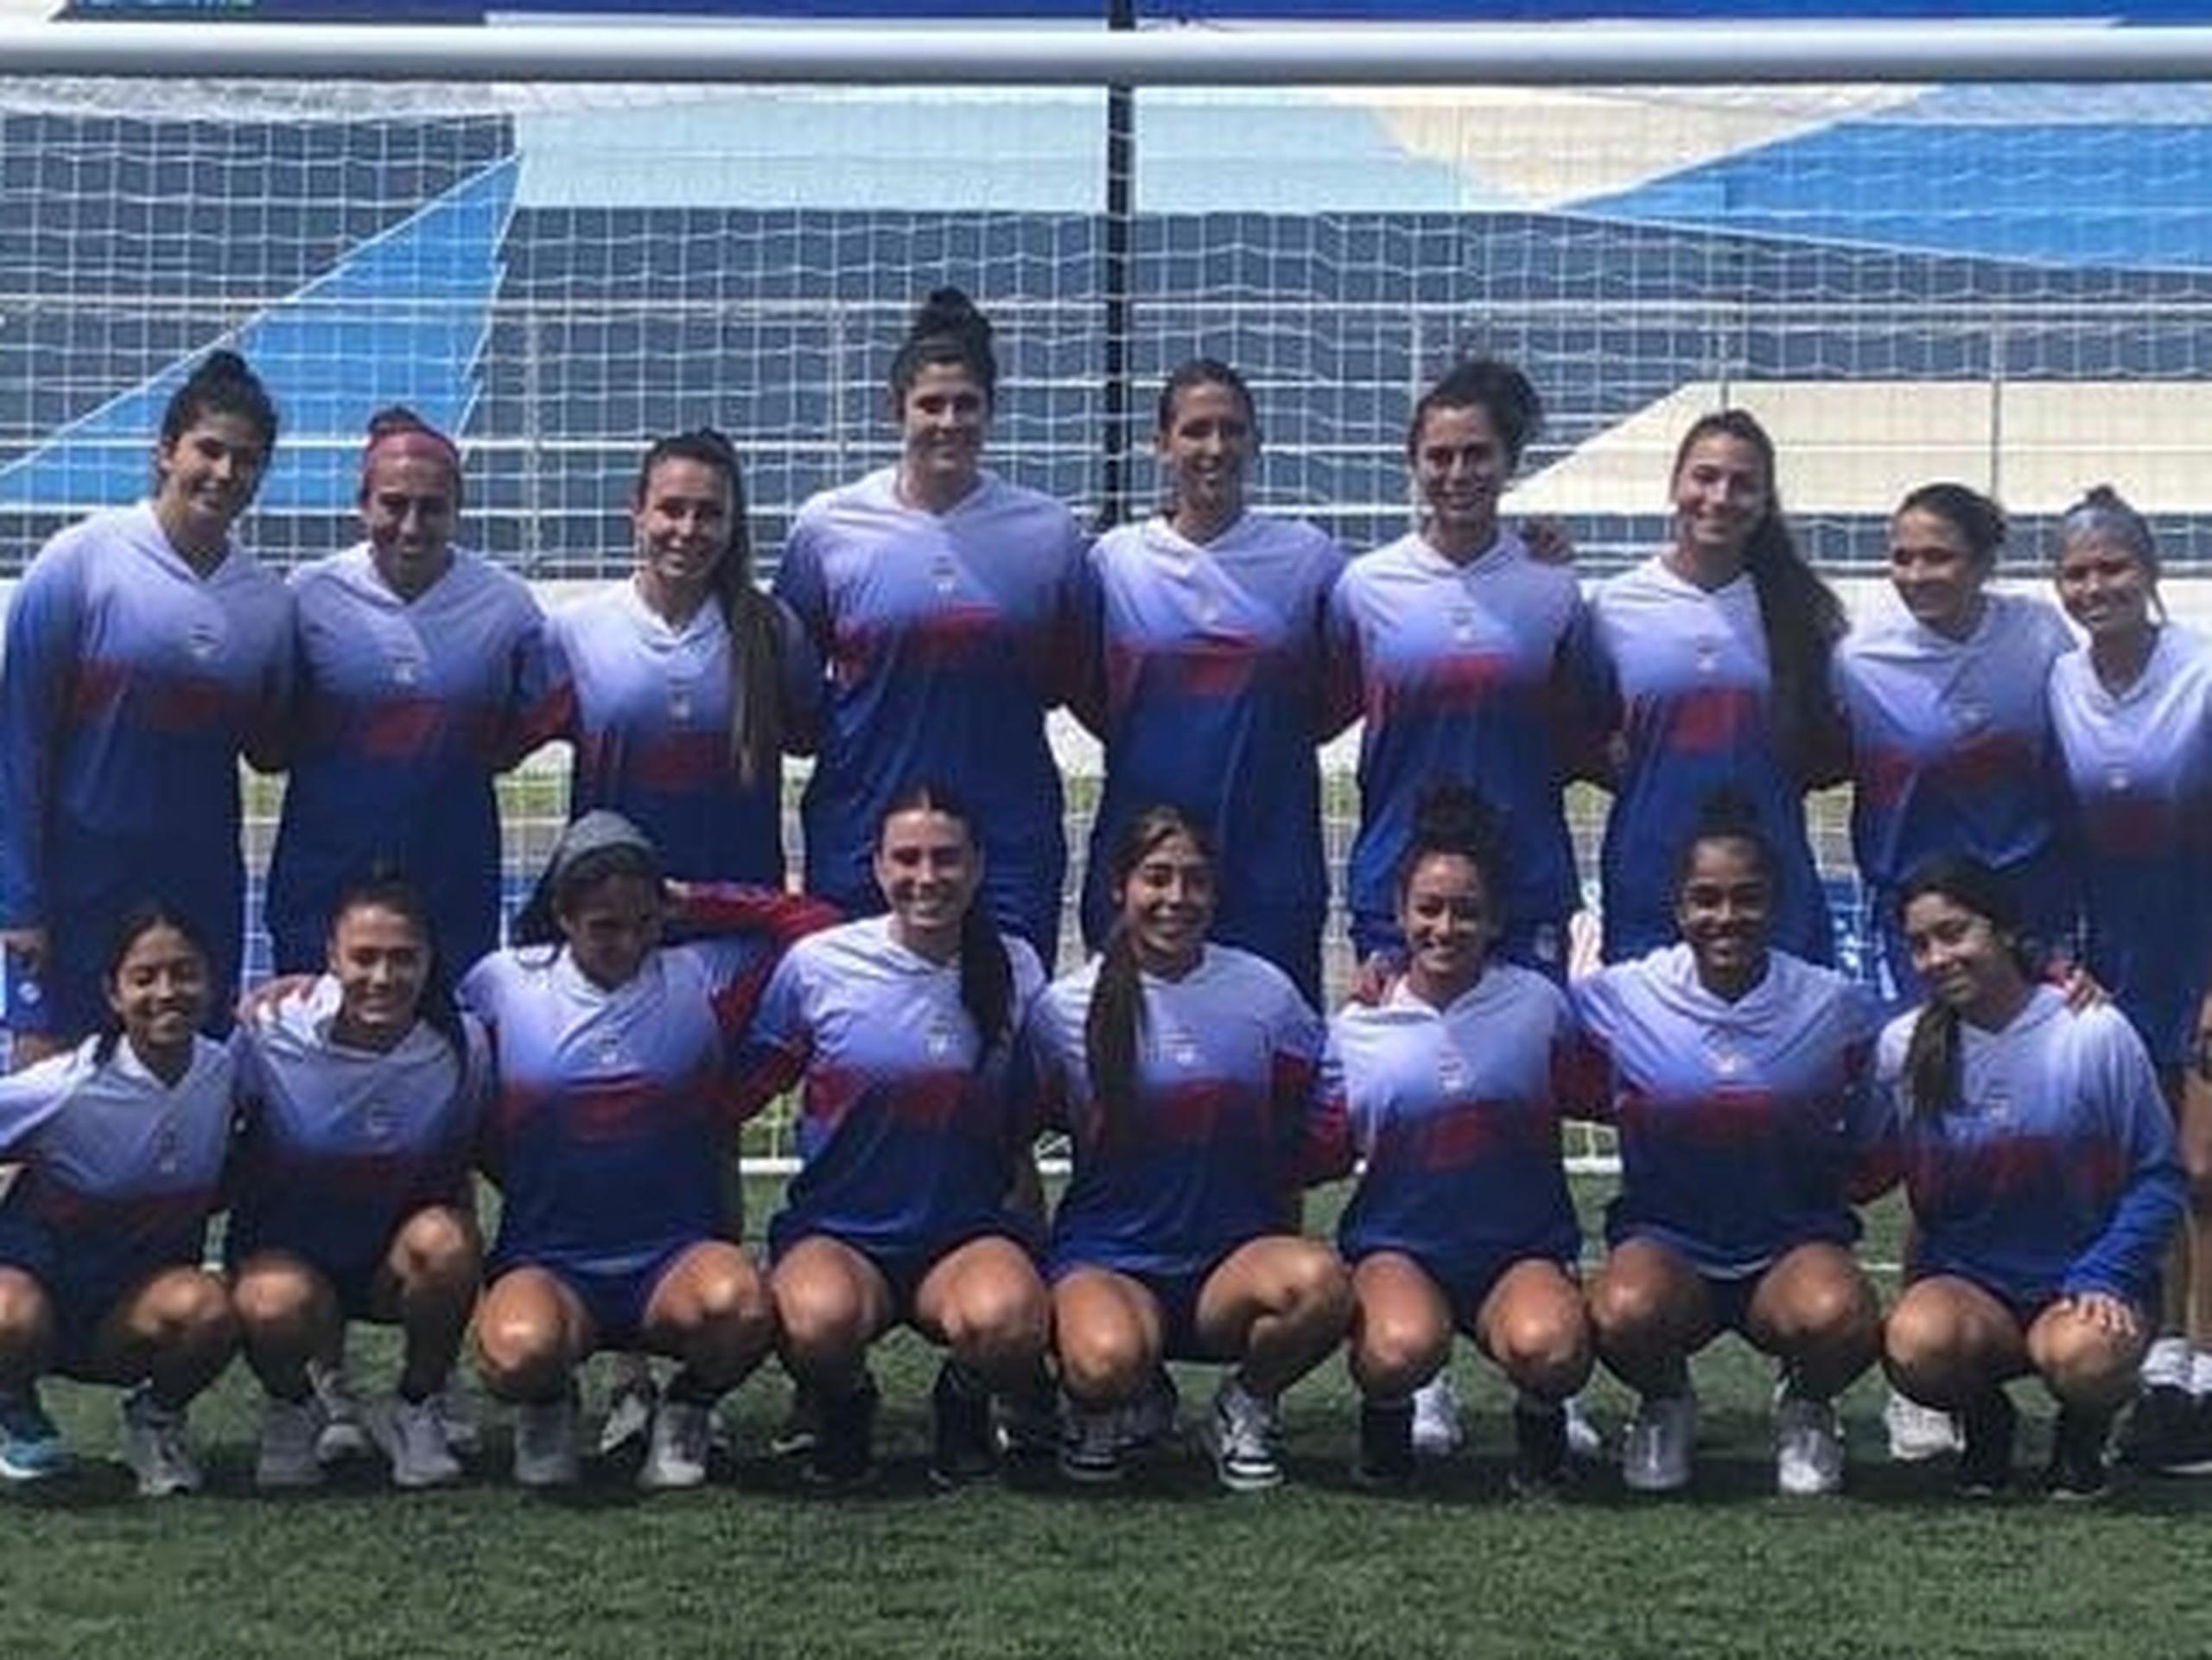 :a Selección Nacional de Fútbol Femenina juega por segunda vez en su historia en los Juegos Centroamericanos y del Caribe, pero la primera por derecho propio de clasificación. La vez anterior fue en los Juegos Mayagüez 2010 por derecho de ser país anfitrión.